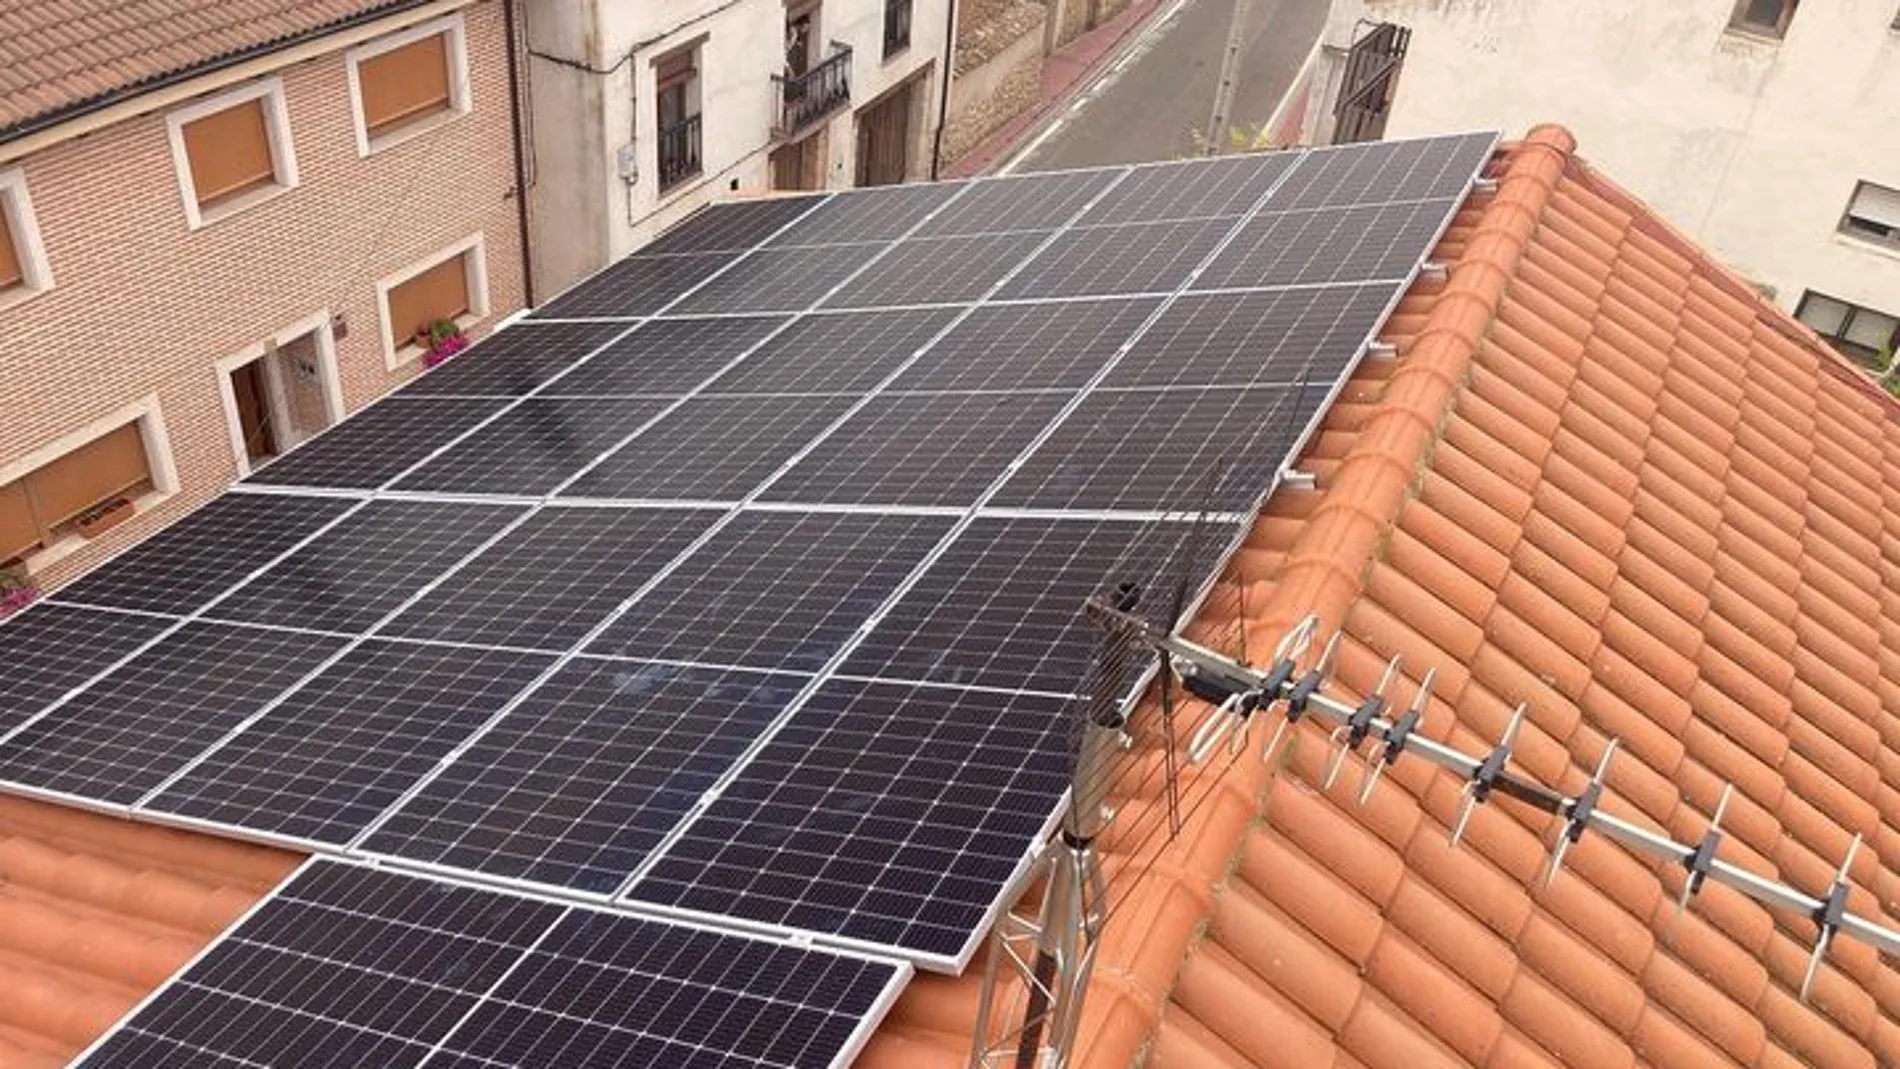 Panales solares en una vivienda de la localidad vallisoletana de Peñafiel